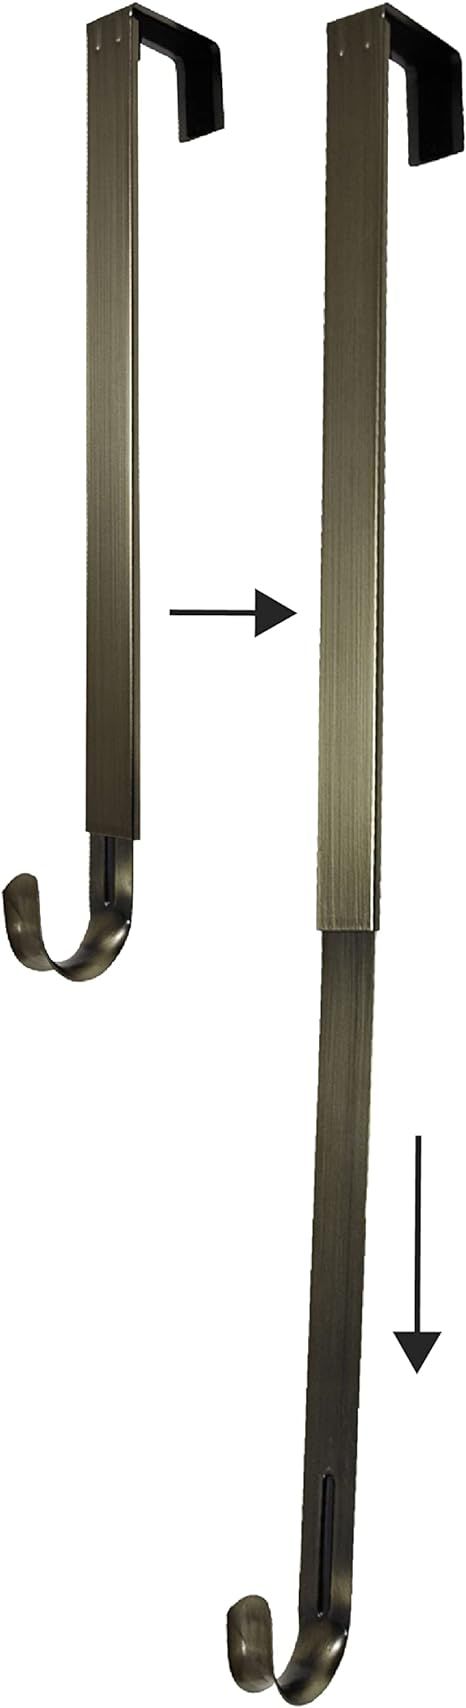 Haute Decor Adapt Adjustable Wreath Hanger (Antique Brass) — Over The Door Wreath Hanger — Ye... | Amazon (US)